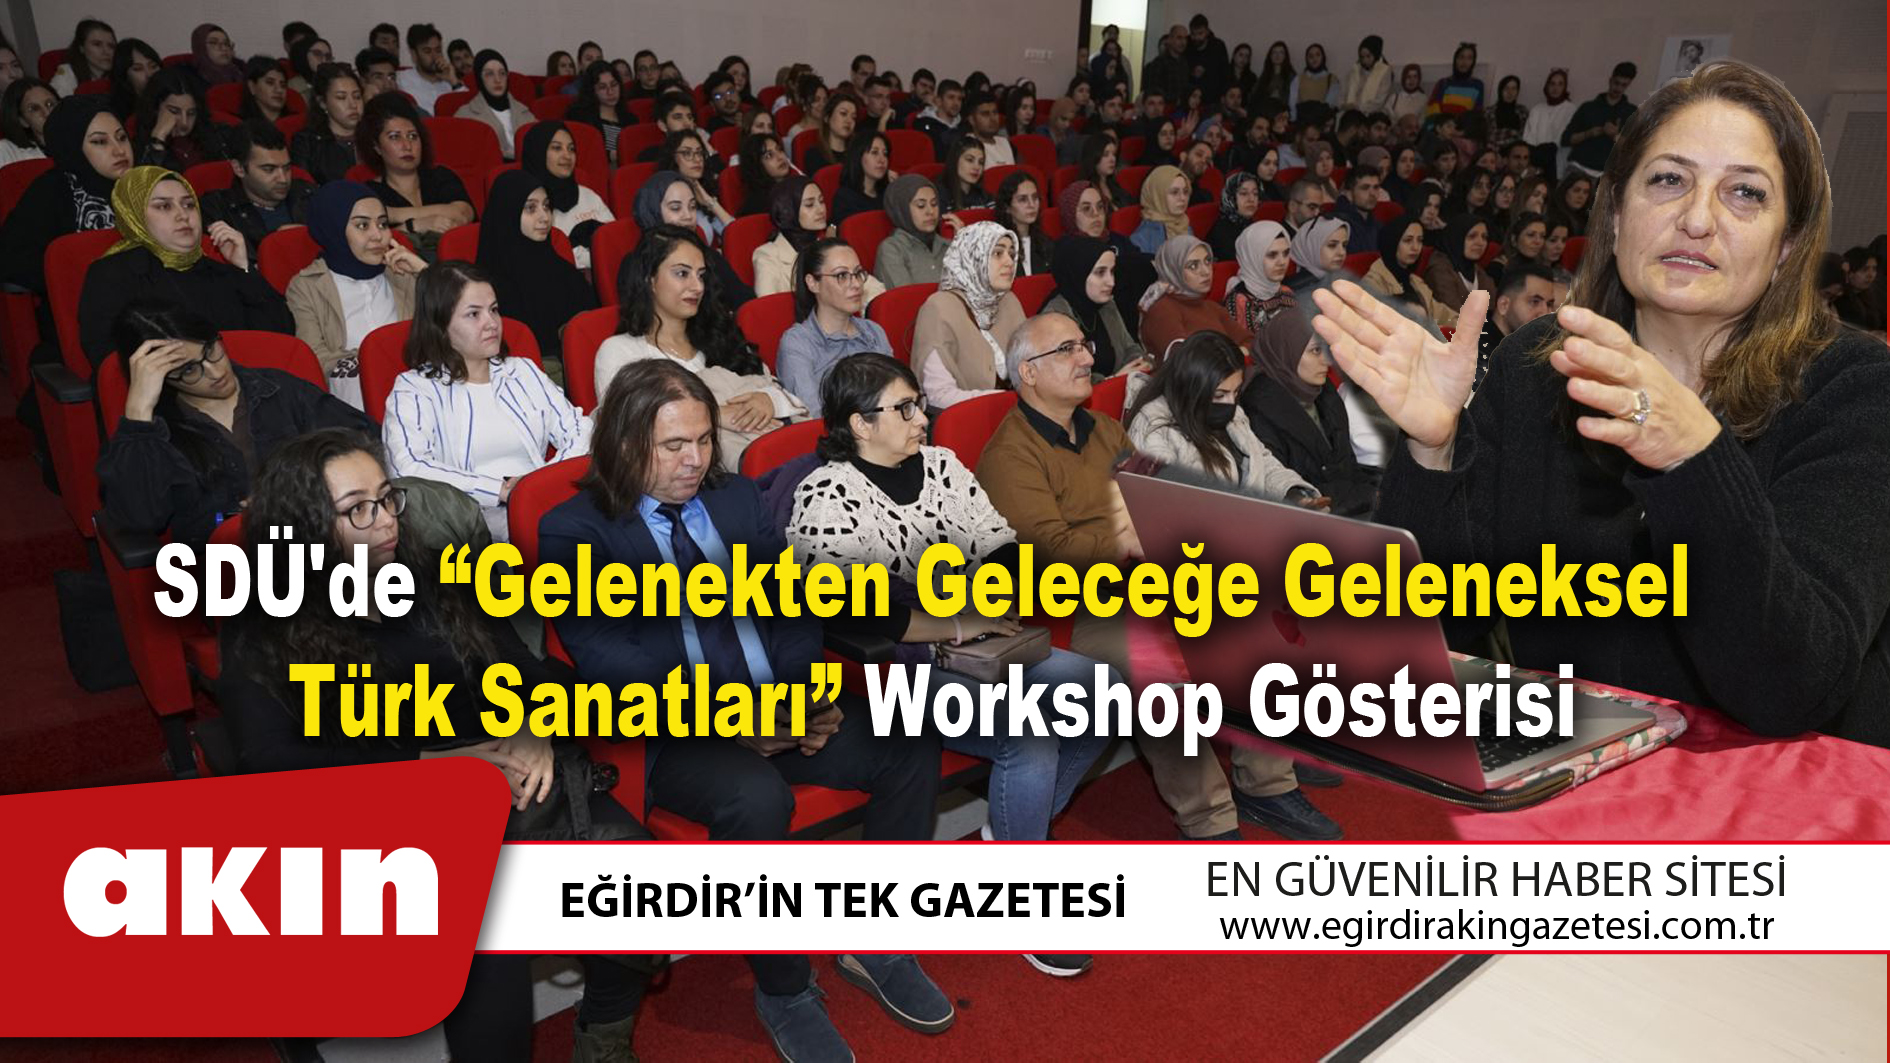 SDÜ'de “Gelenekten Geleceğe Geleneksel Türk Sanatları” Workshop Gösterisi